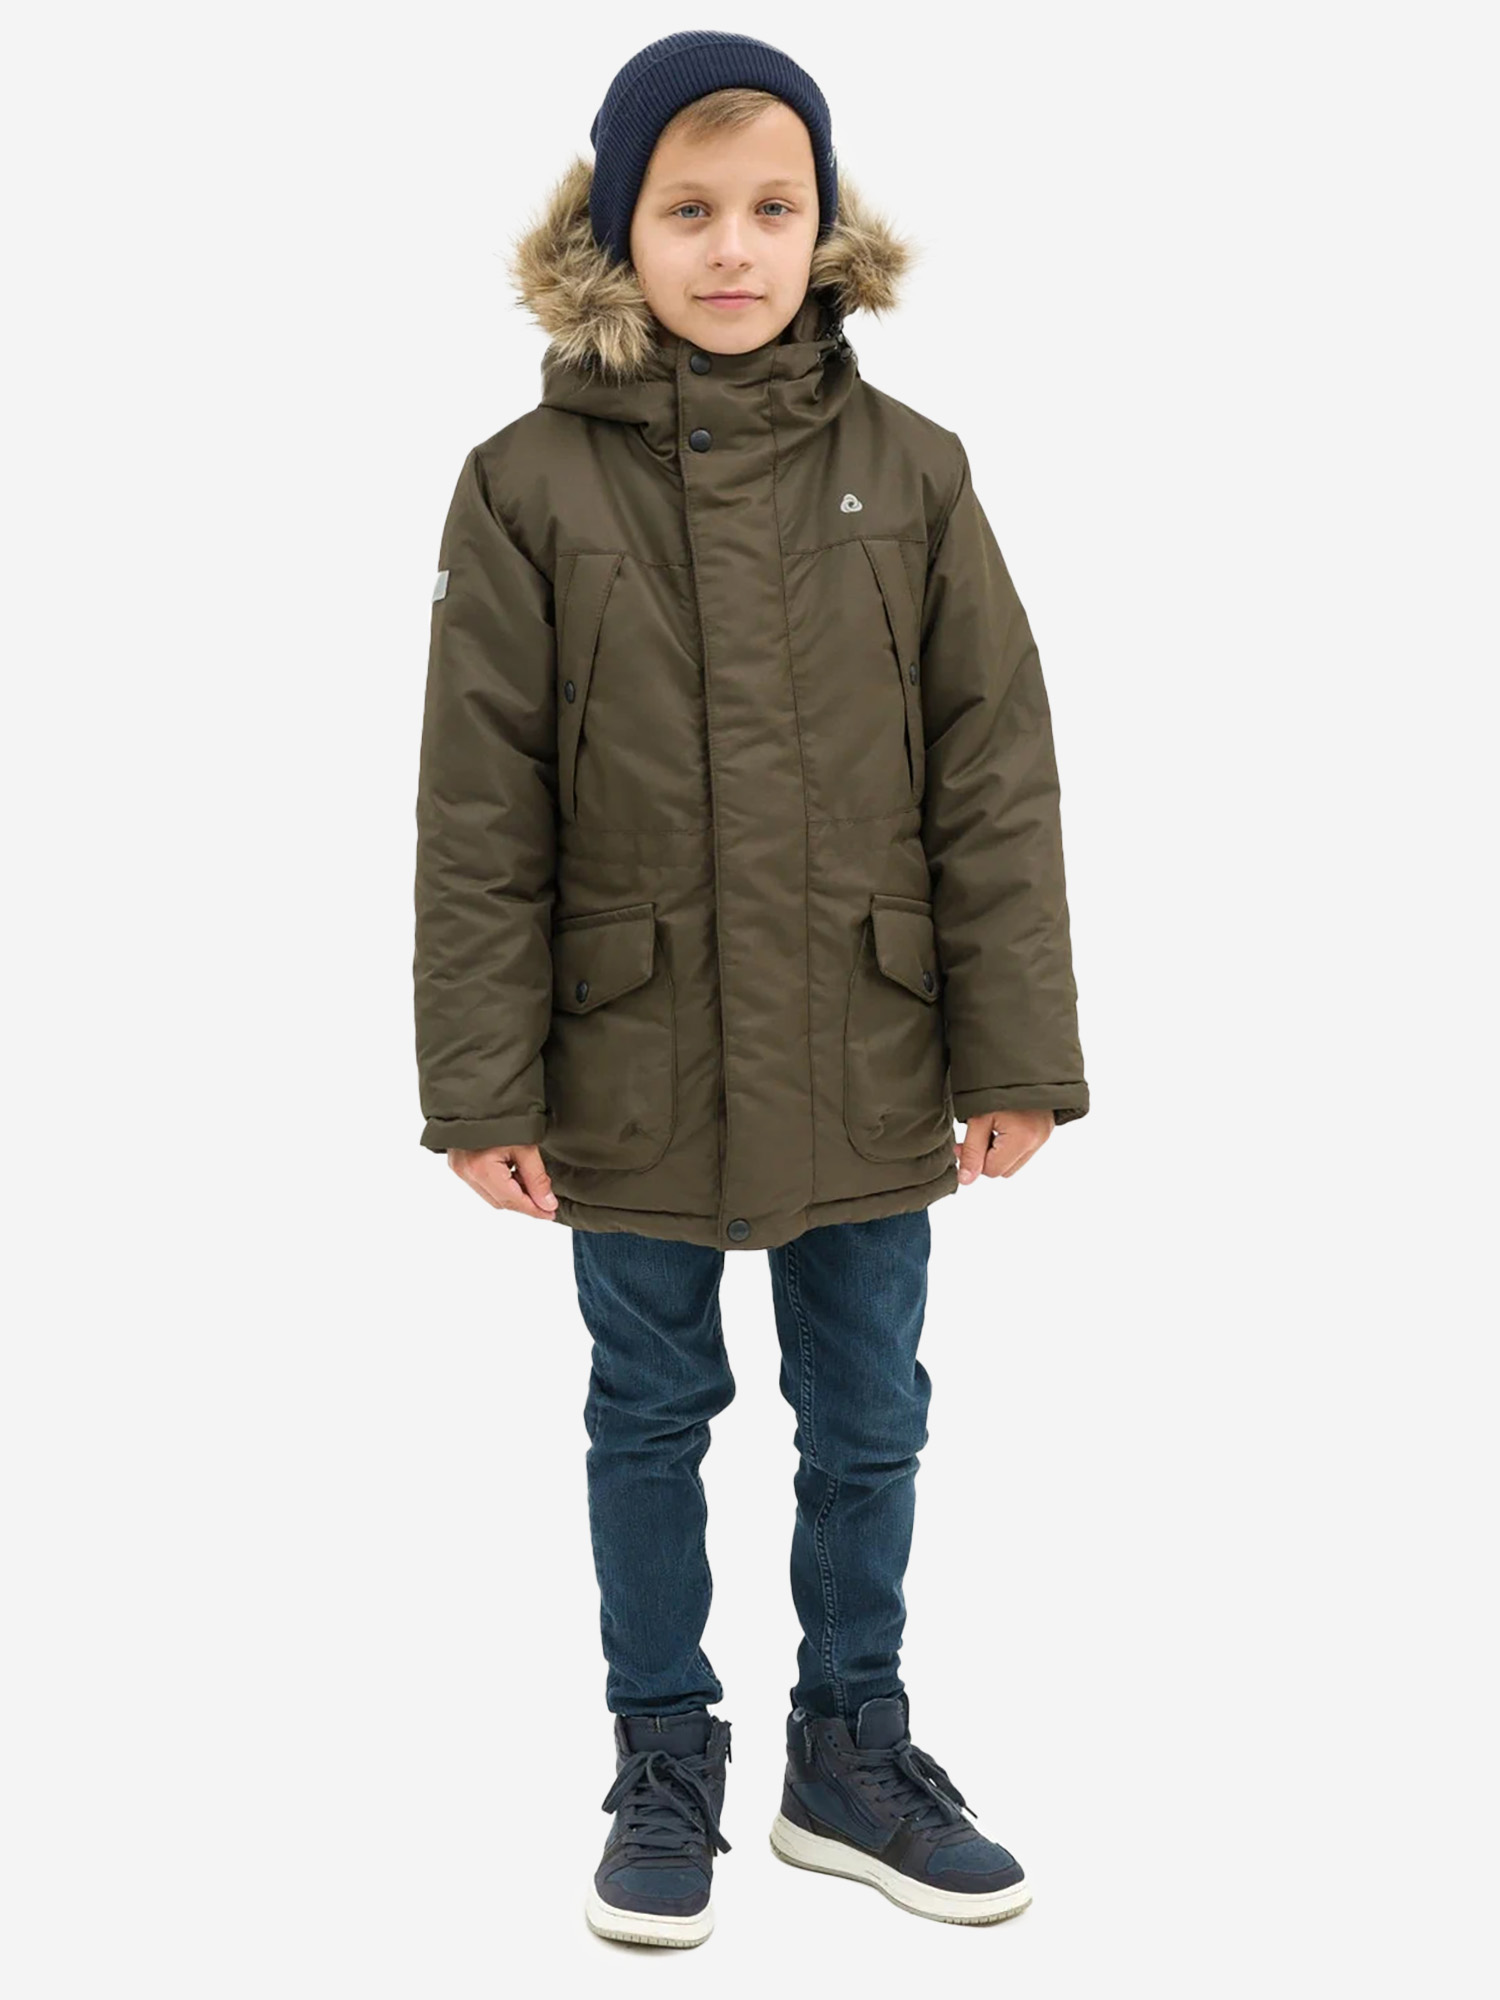 Куртка детская зимняя CosmoTex, Зеленый valianly парка зимняя подростковая для мальчика 9339